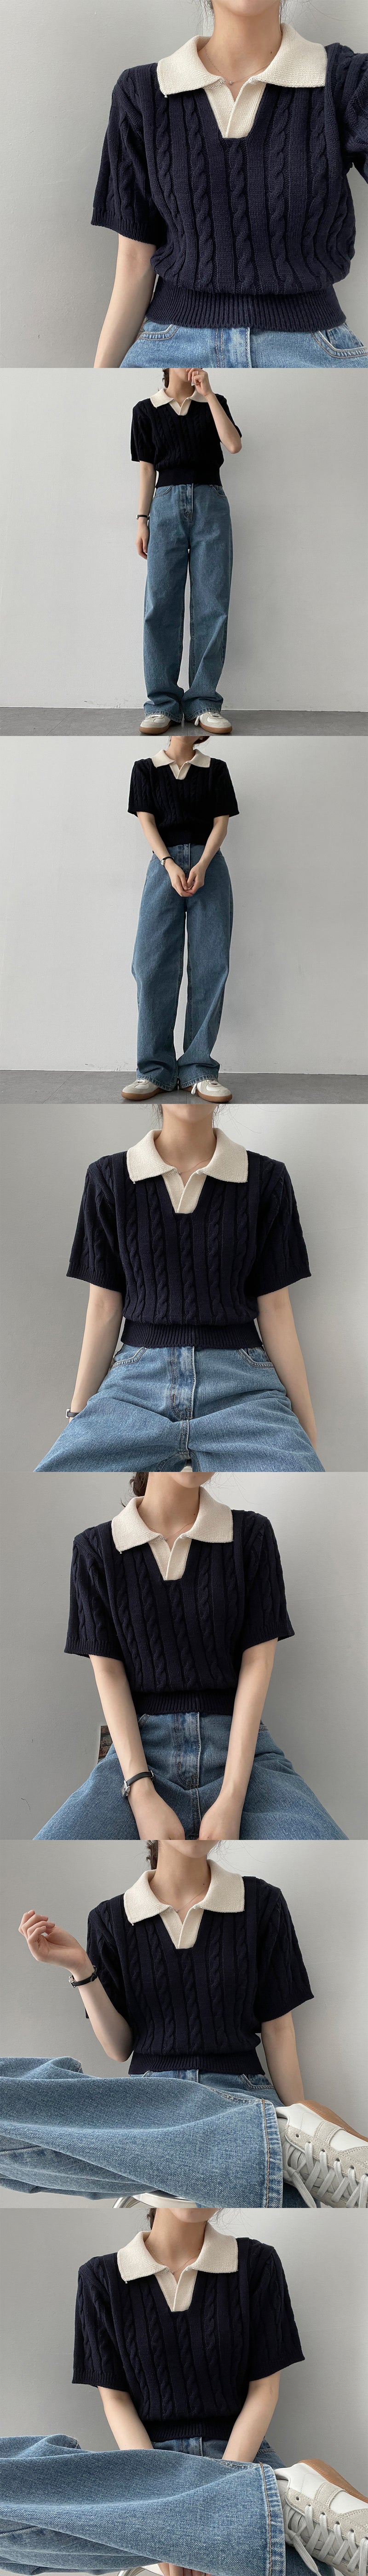 カラーリングカラーツイストクロップドショートスリーブニットウェア / colouring collar twist cropped short-sleeved knitwear